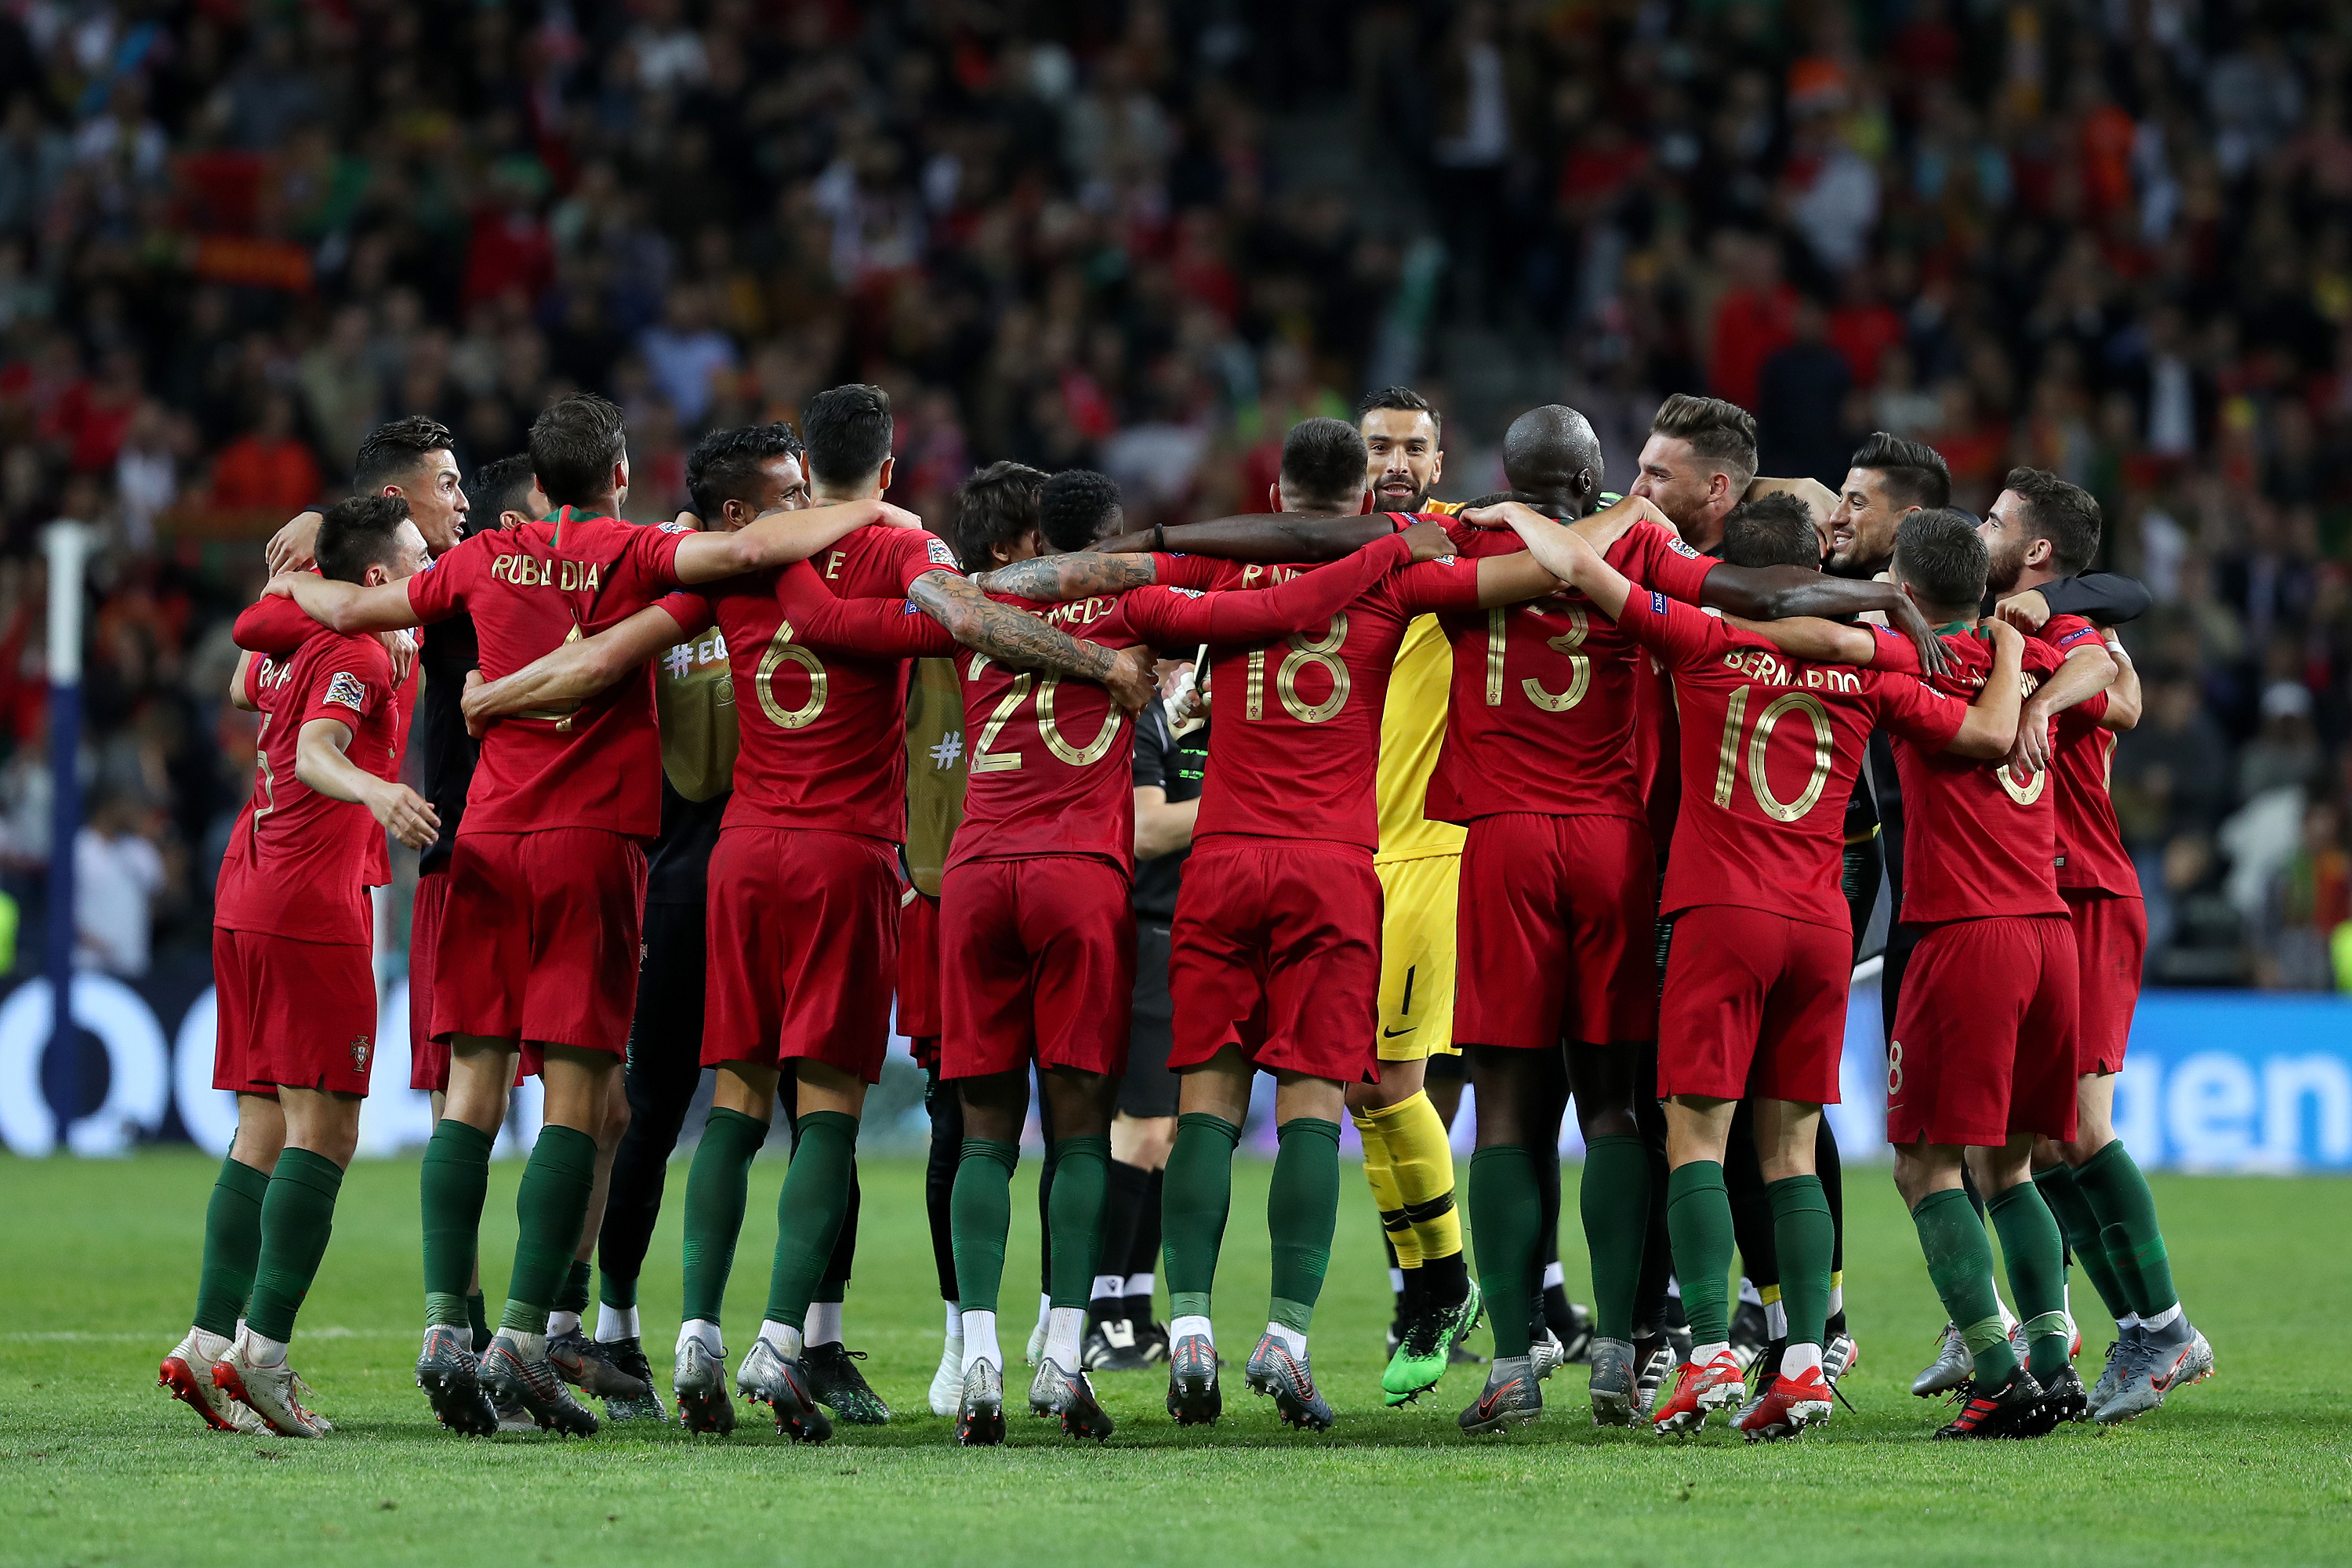 足球——欧洲国家联赛:葡萄牙获得冠军